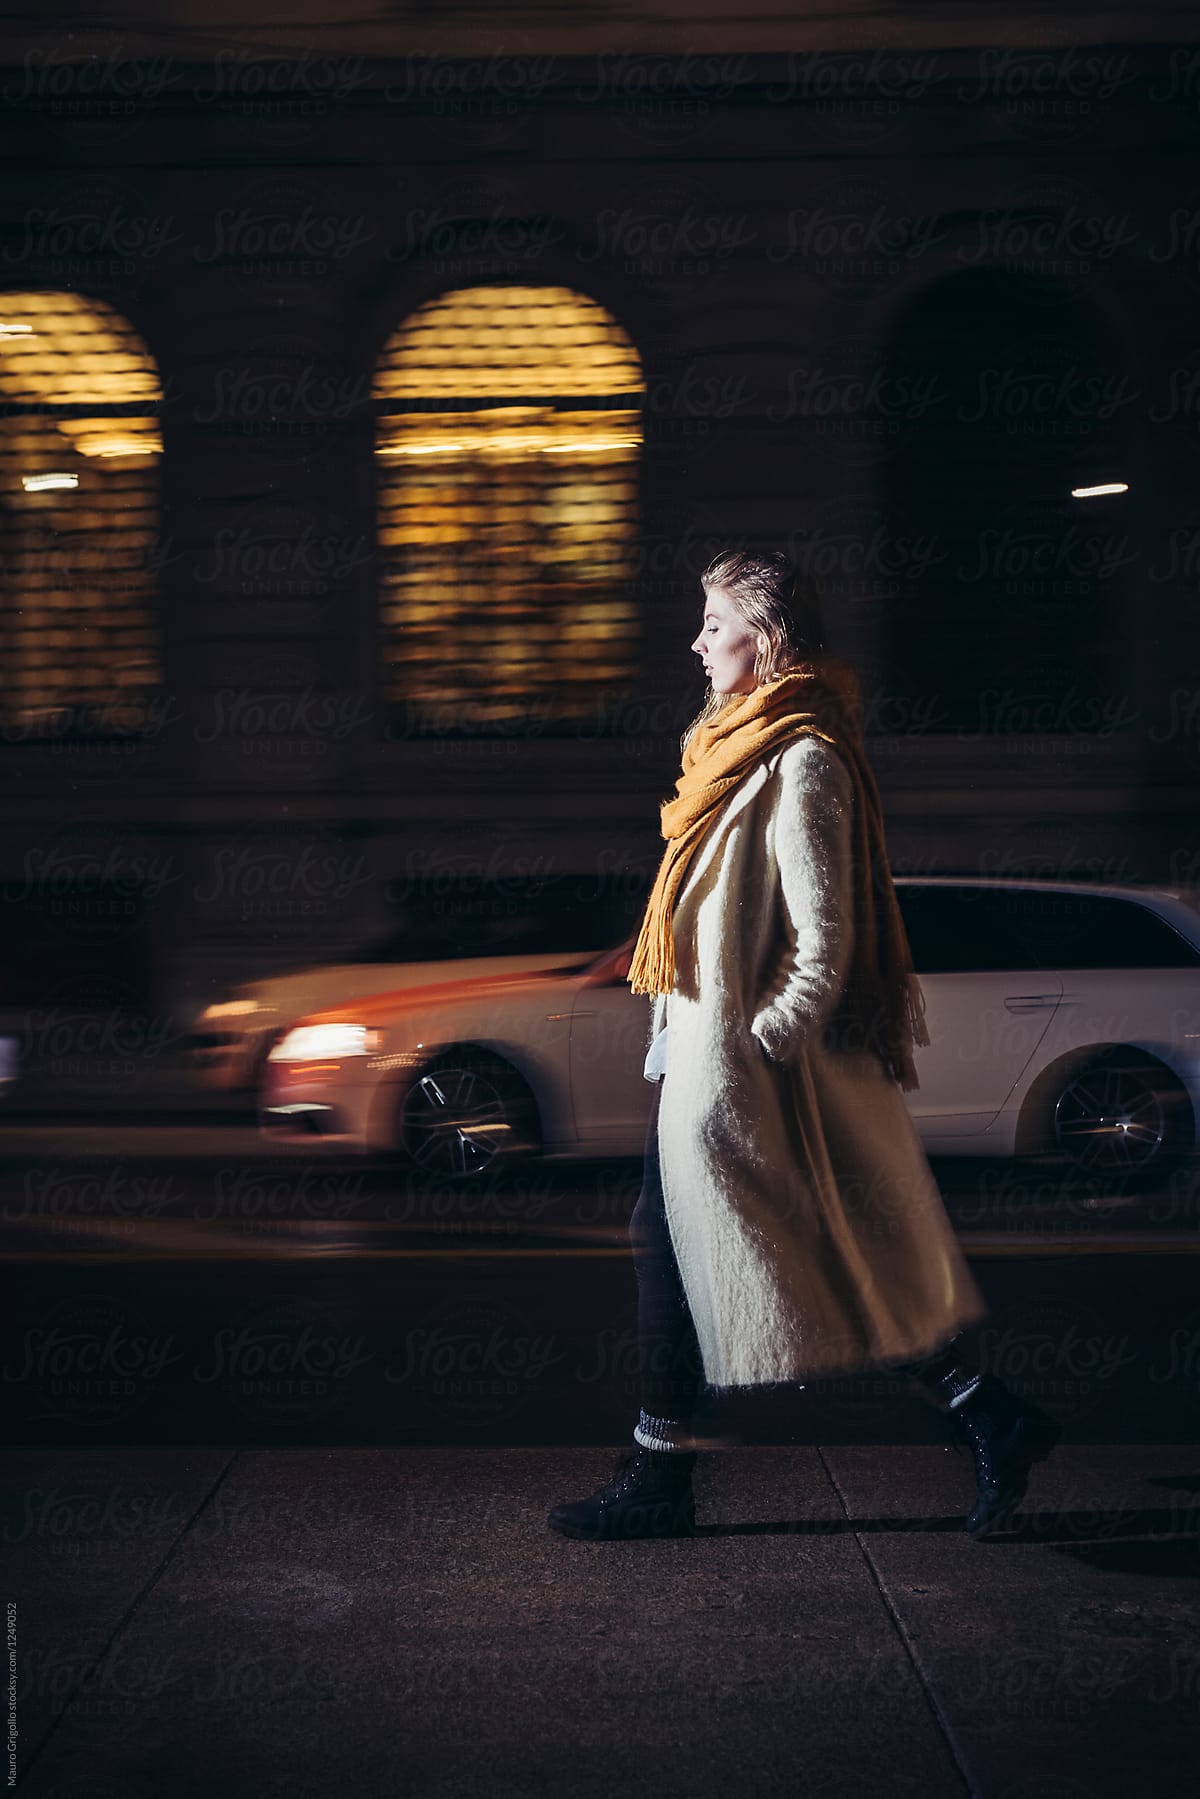 Woman walks alone in urban area at night